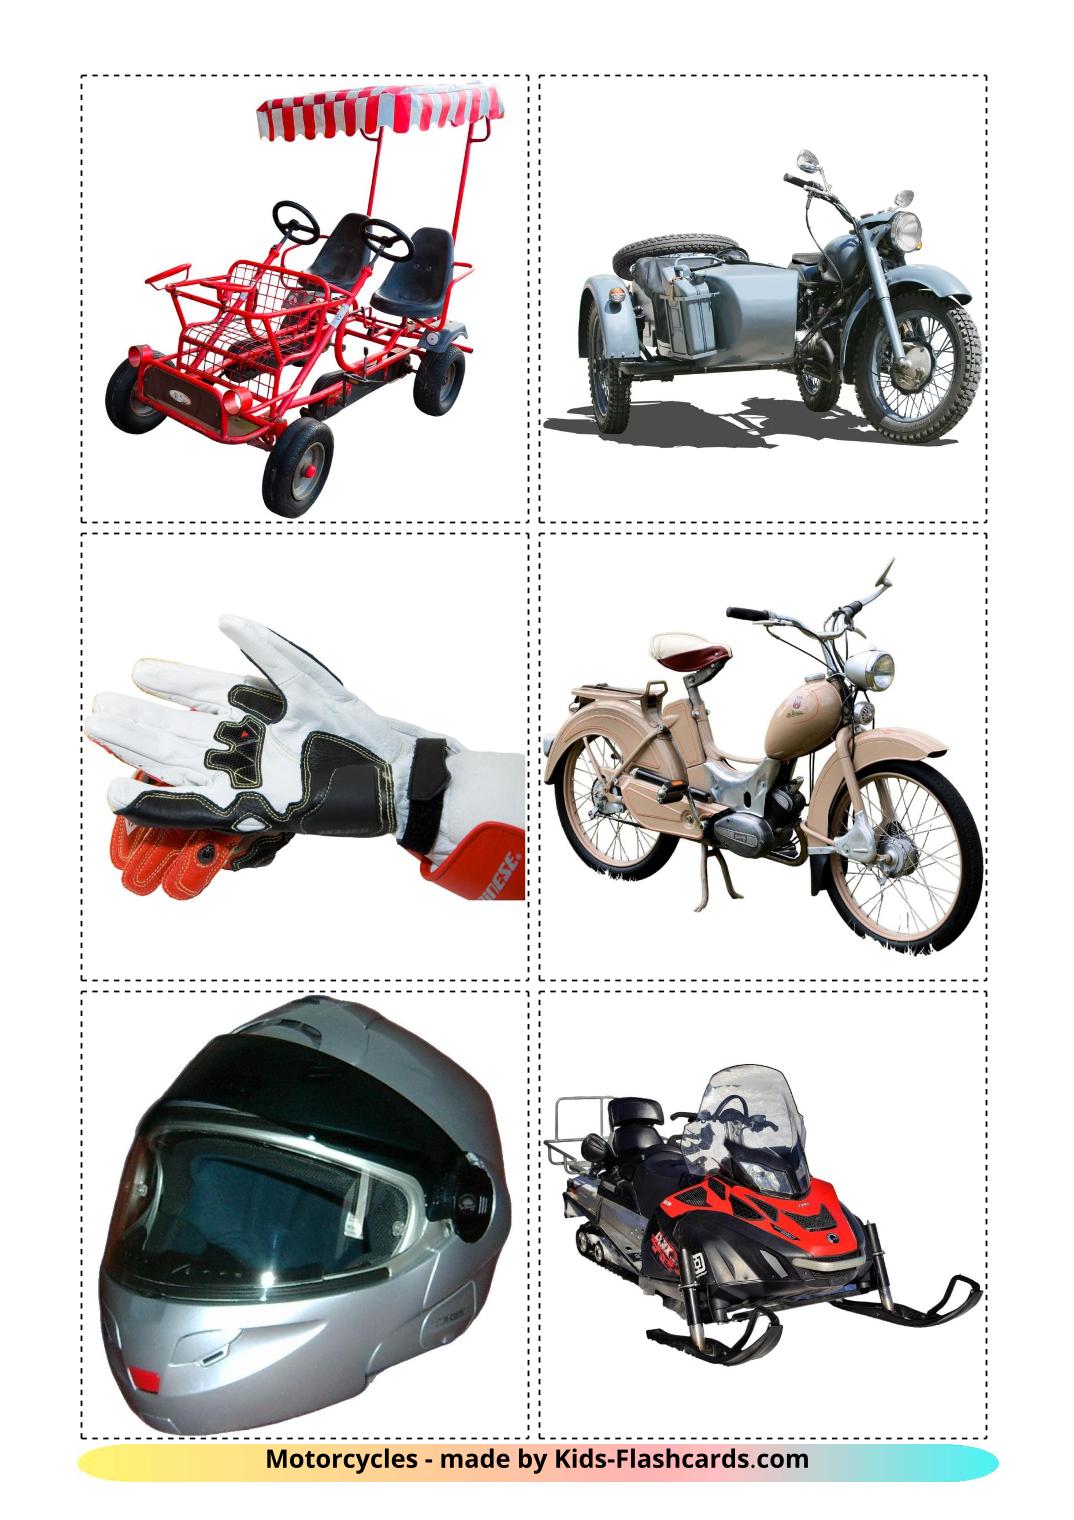 Motocicletas - 12 Flashcards albanêses gratuitos para impressão